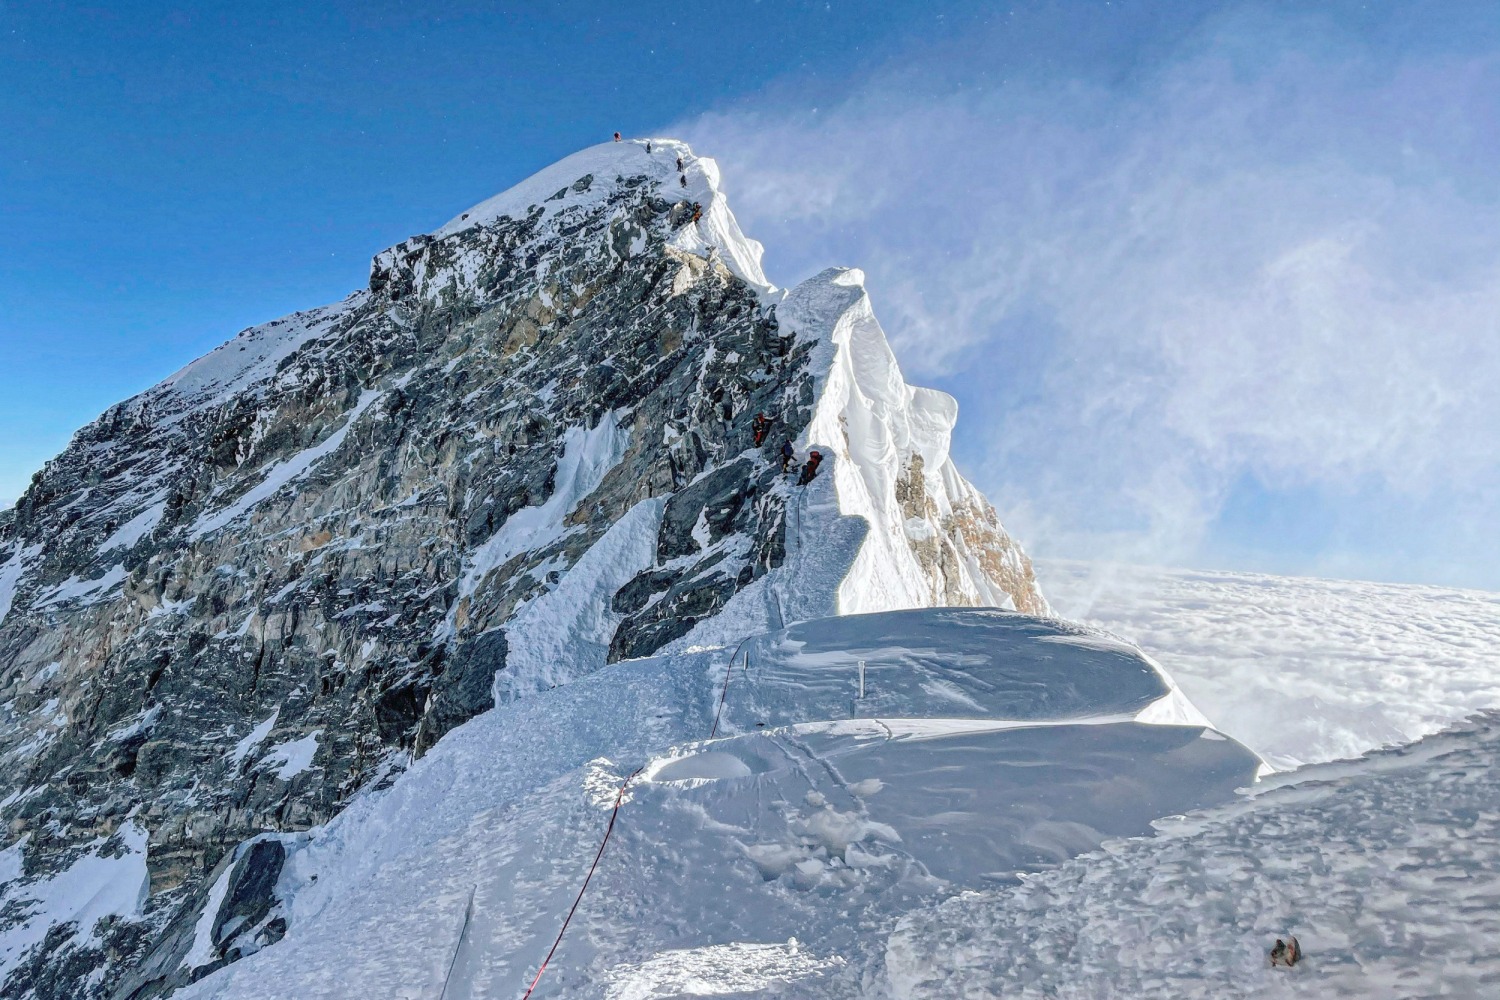 Mount Everest helicopter crash kills at 5